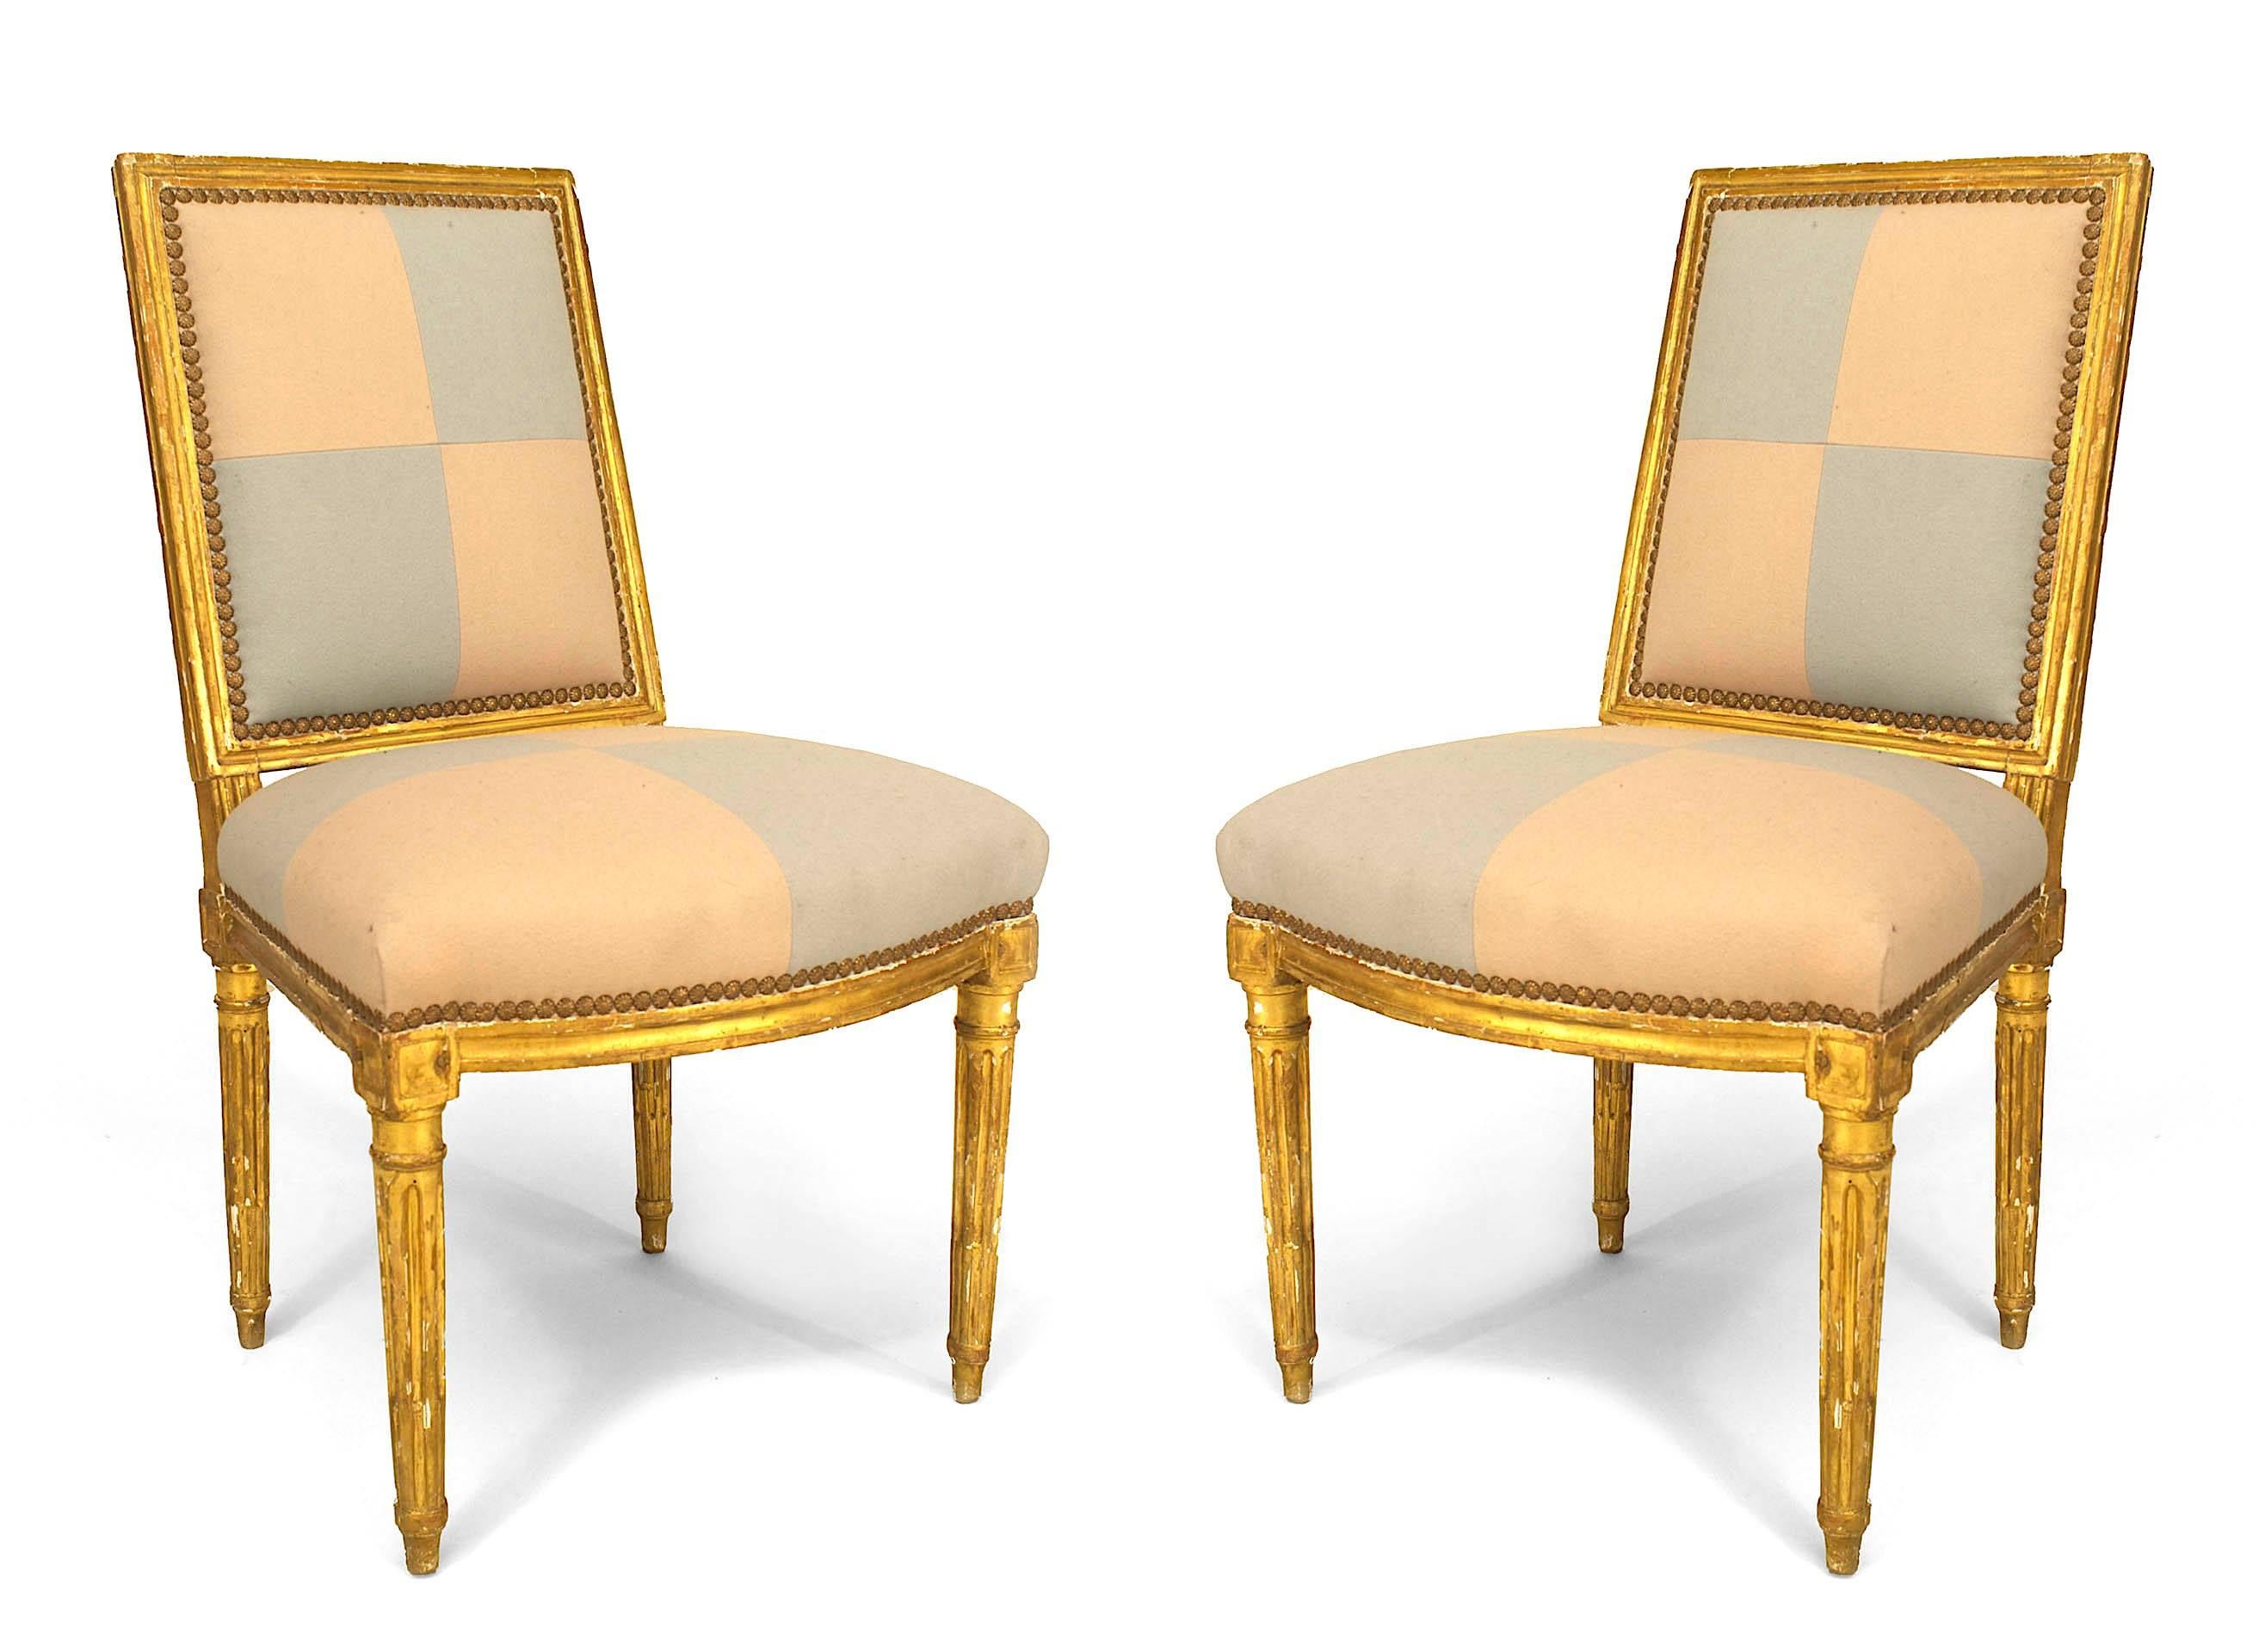 Paire de chaises latérales françaises Louis XVI (XVIIIe siècle) à dossier carré et tapissées d'un motif carré beige et bleu sur l'assise et le dossier.
